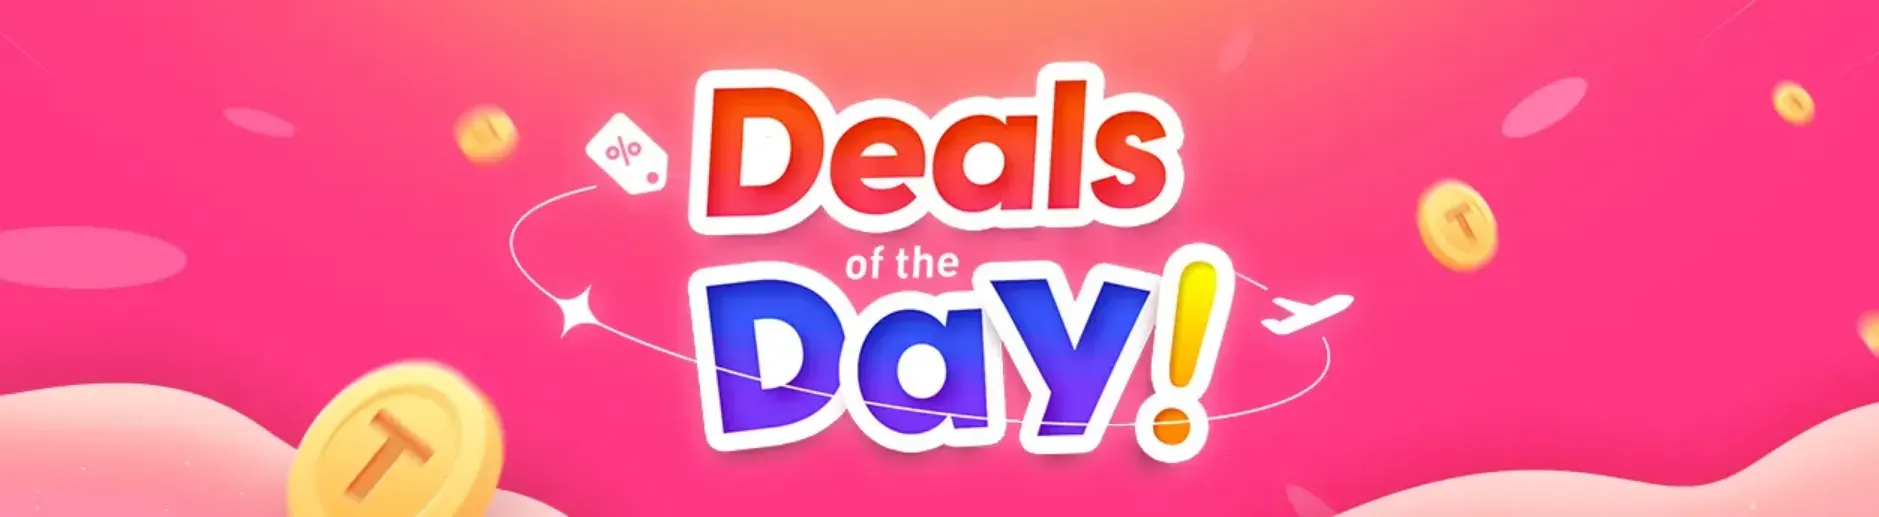 Trip.com Promo Code Singapore: Deals of the Day